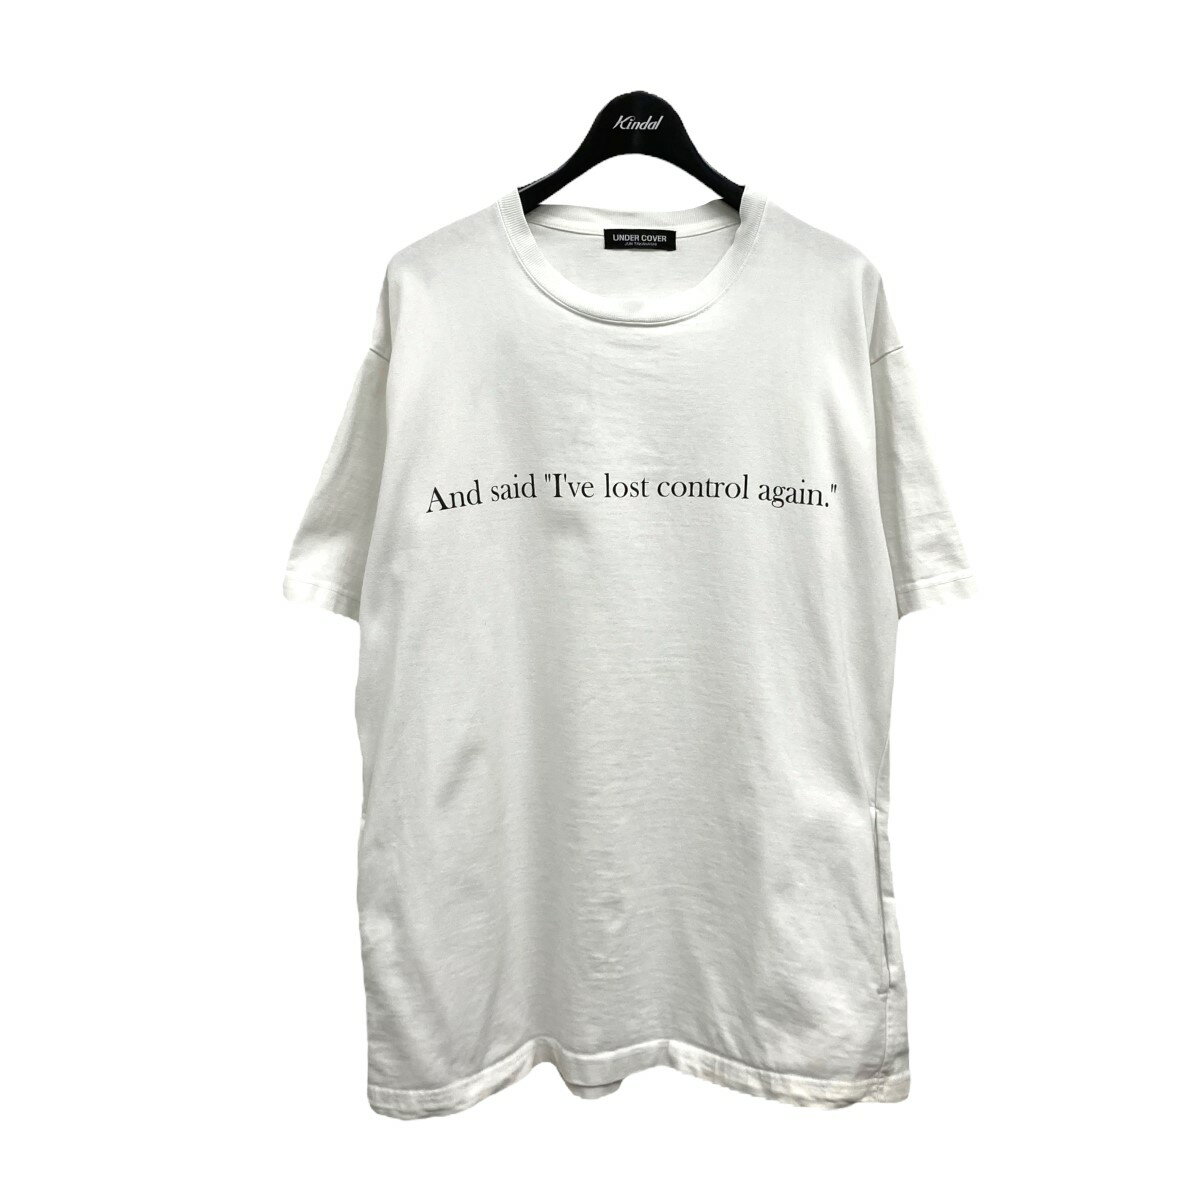 トップス, Tシャツ・カットソー UNDERCOVER Joy Divisions T 2 010622